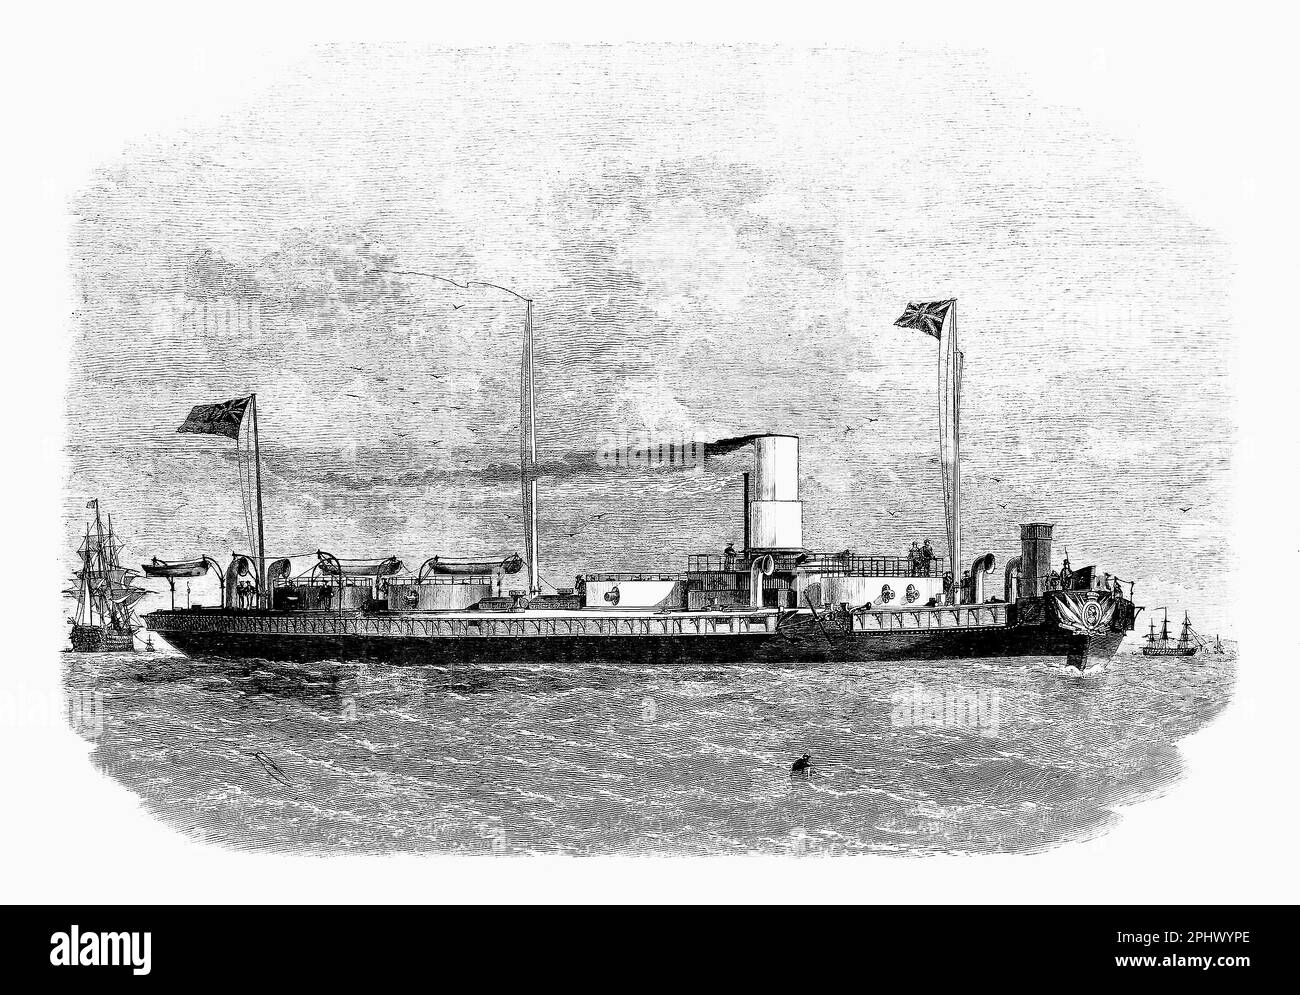 Le HMS Royal Sovereign était à l'origine un navire de première classe de 121 canons de la ligne de la Royal Navy. Avec la montée de la vapeur et de la propulsion à vis, elle a reçu l'ordre d'être convertie sur les stocks en un navire à vis à canon 131, la conversion commençant en janvier 1855 et lancé en 25 avril 1857. Banque D'Images